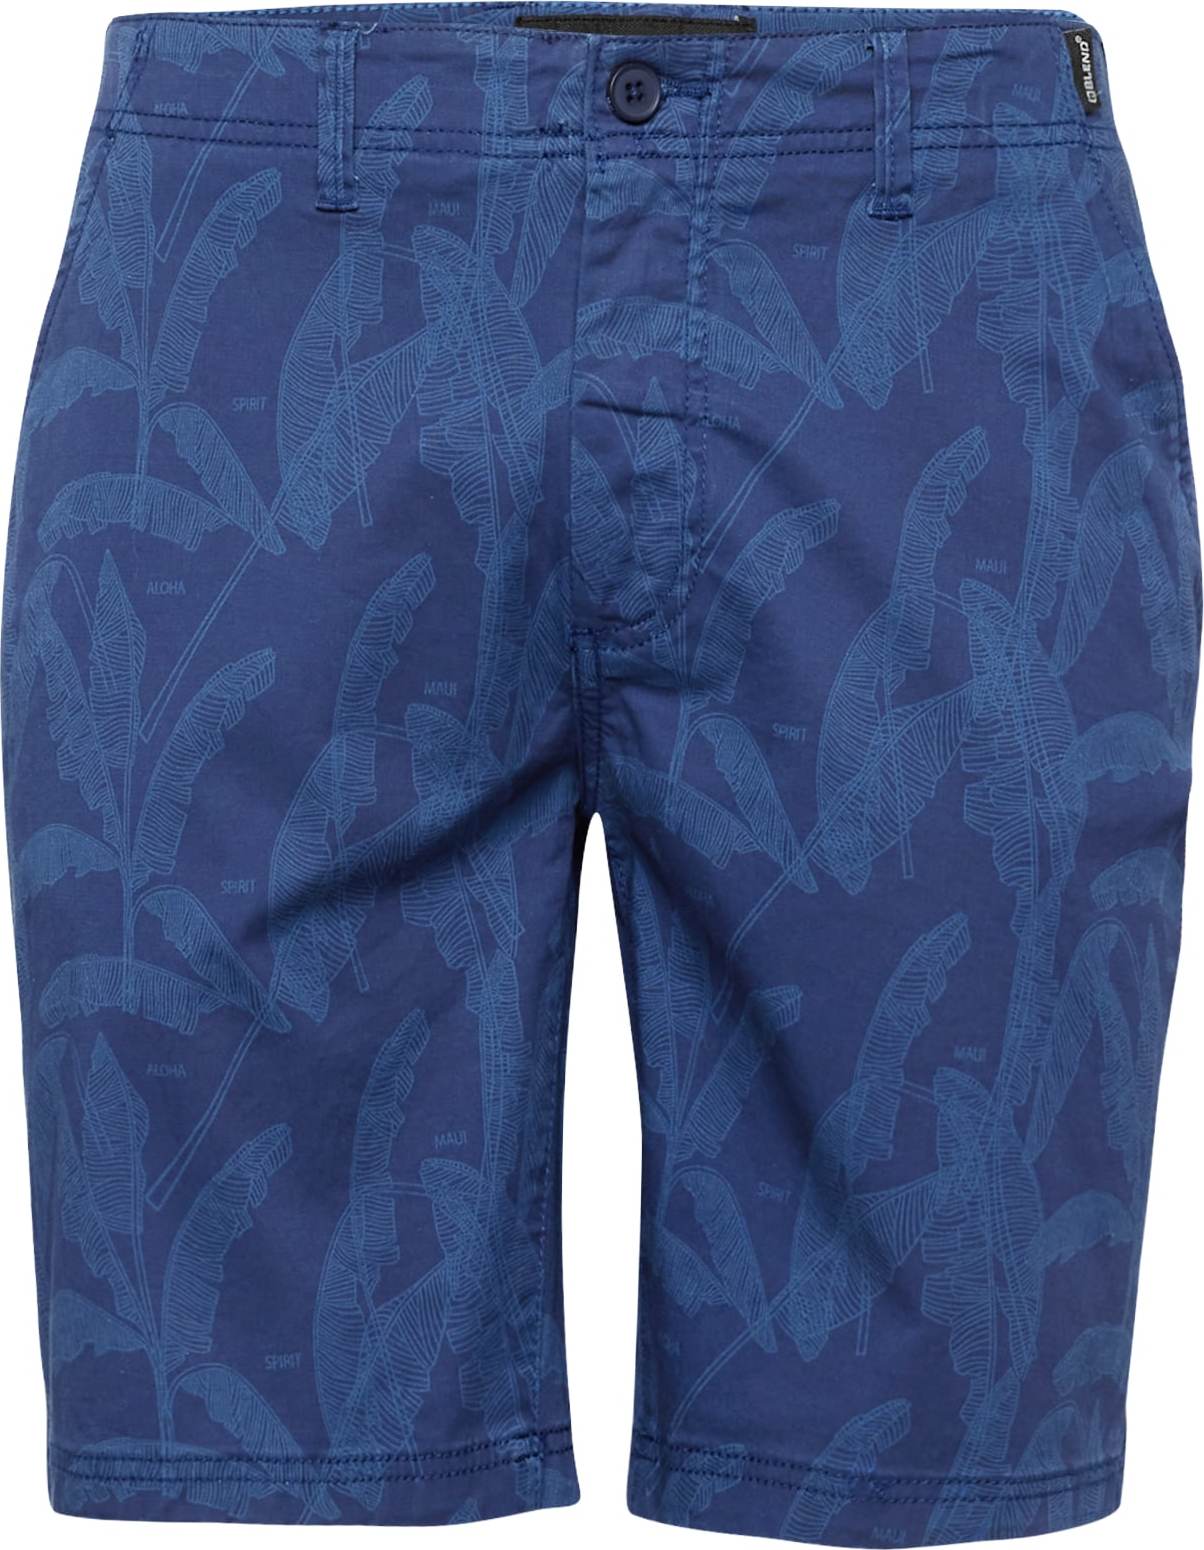 Chino kalhoty Blend námořnická modř / tmavě modrá